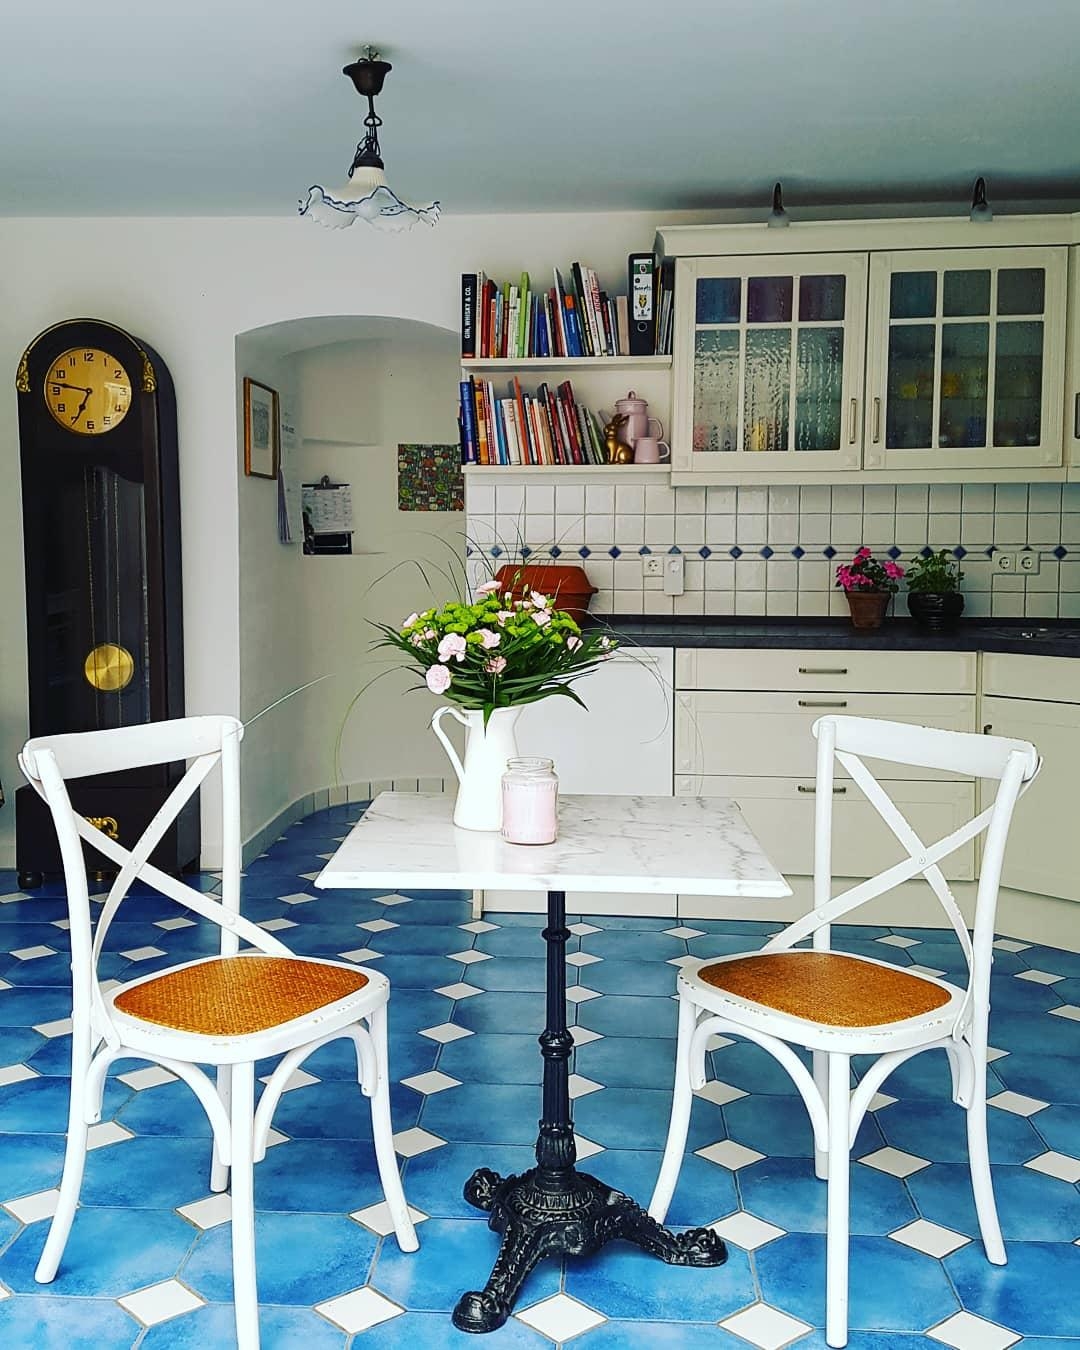 Unsere Küche freut sich über ein paar Blümchen. Und wir auch😊🌸 #küche #landhausstil #vintage #blumenvase 